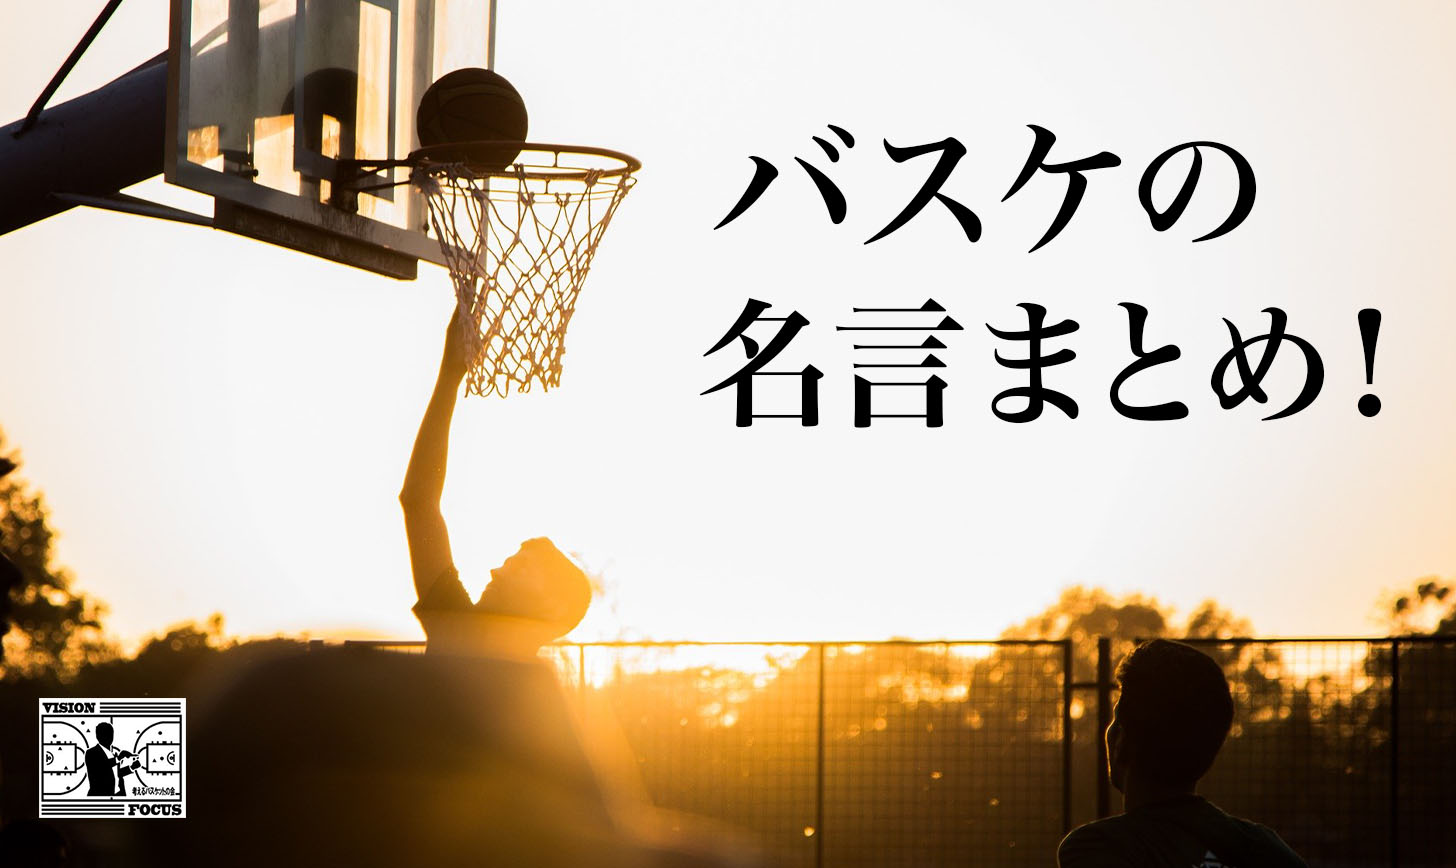 バスケの名言総まとめ！日本人・NBA・スラムダンクの名言など全てまとめました！